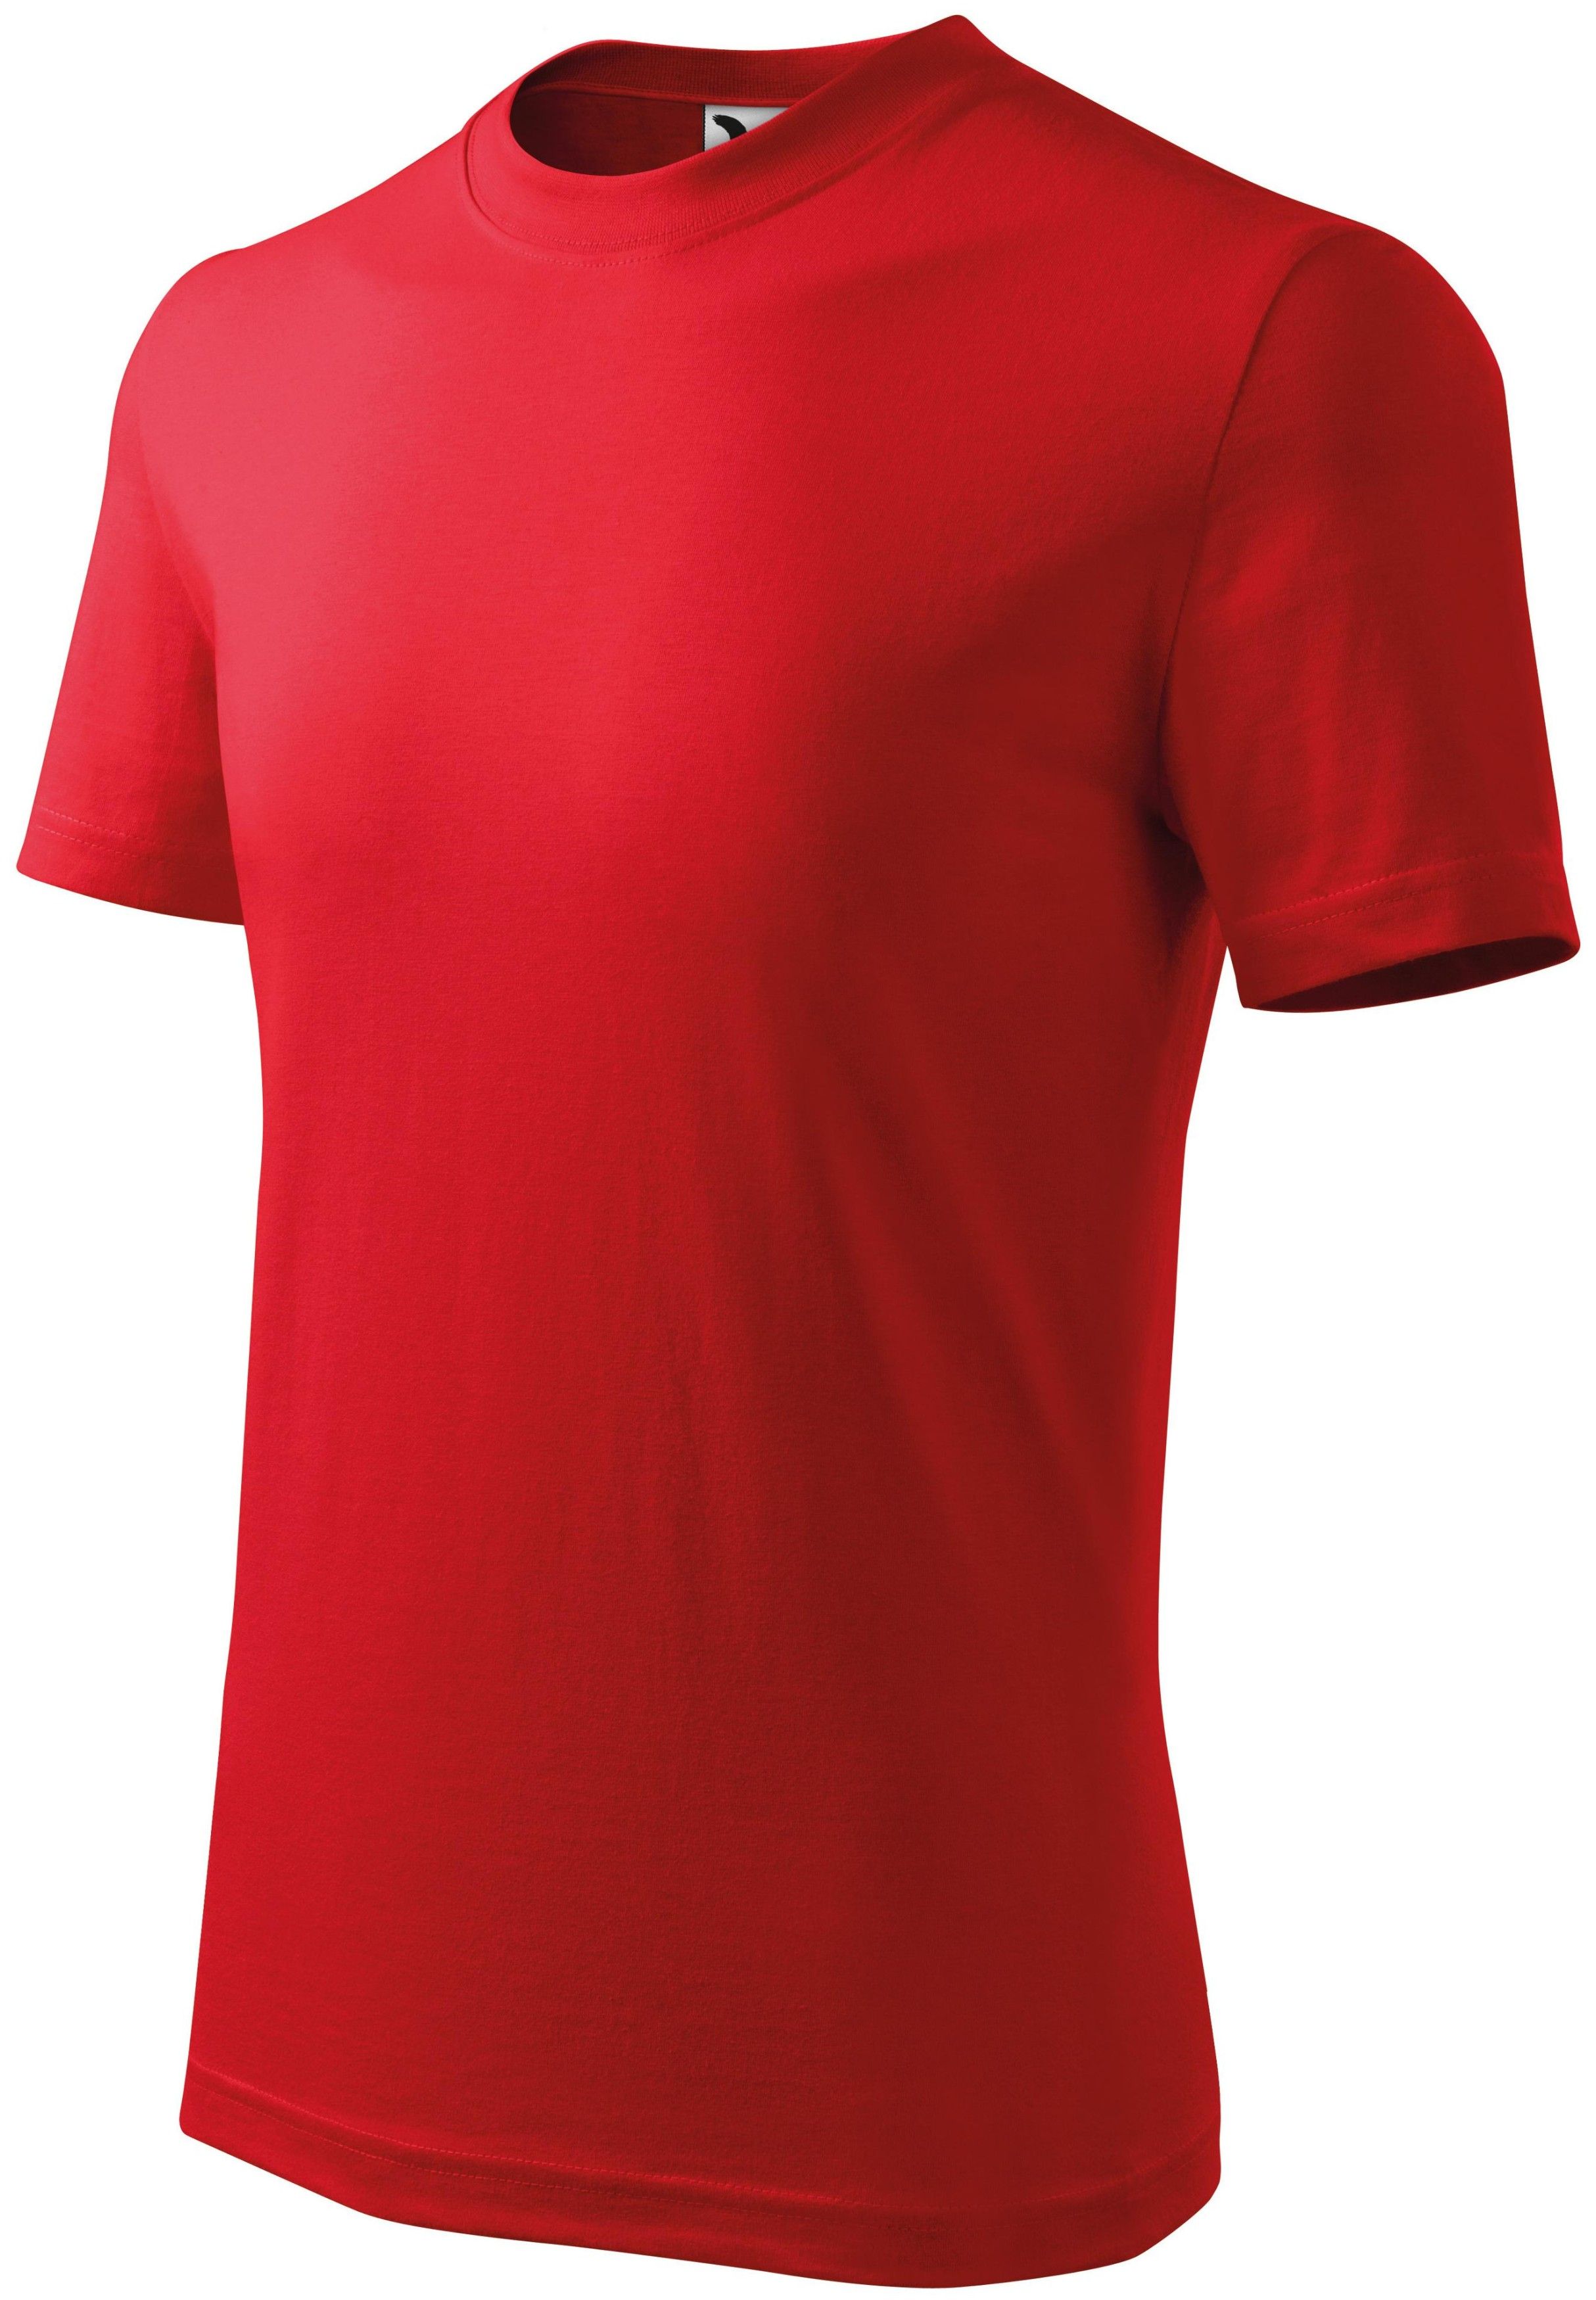 Majica, KR, 145 g, dječja, red, XS